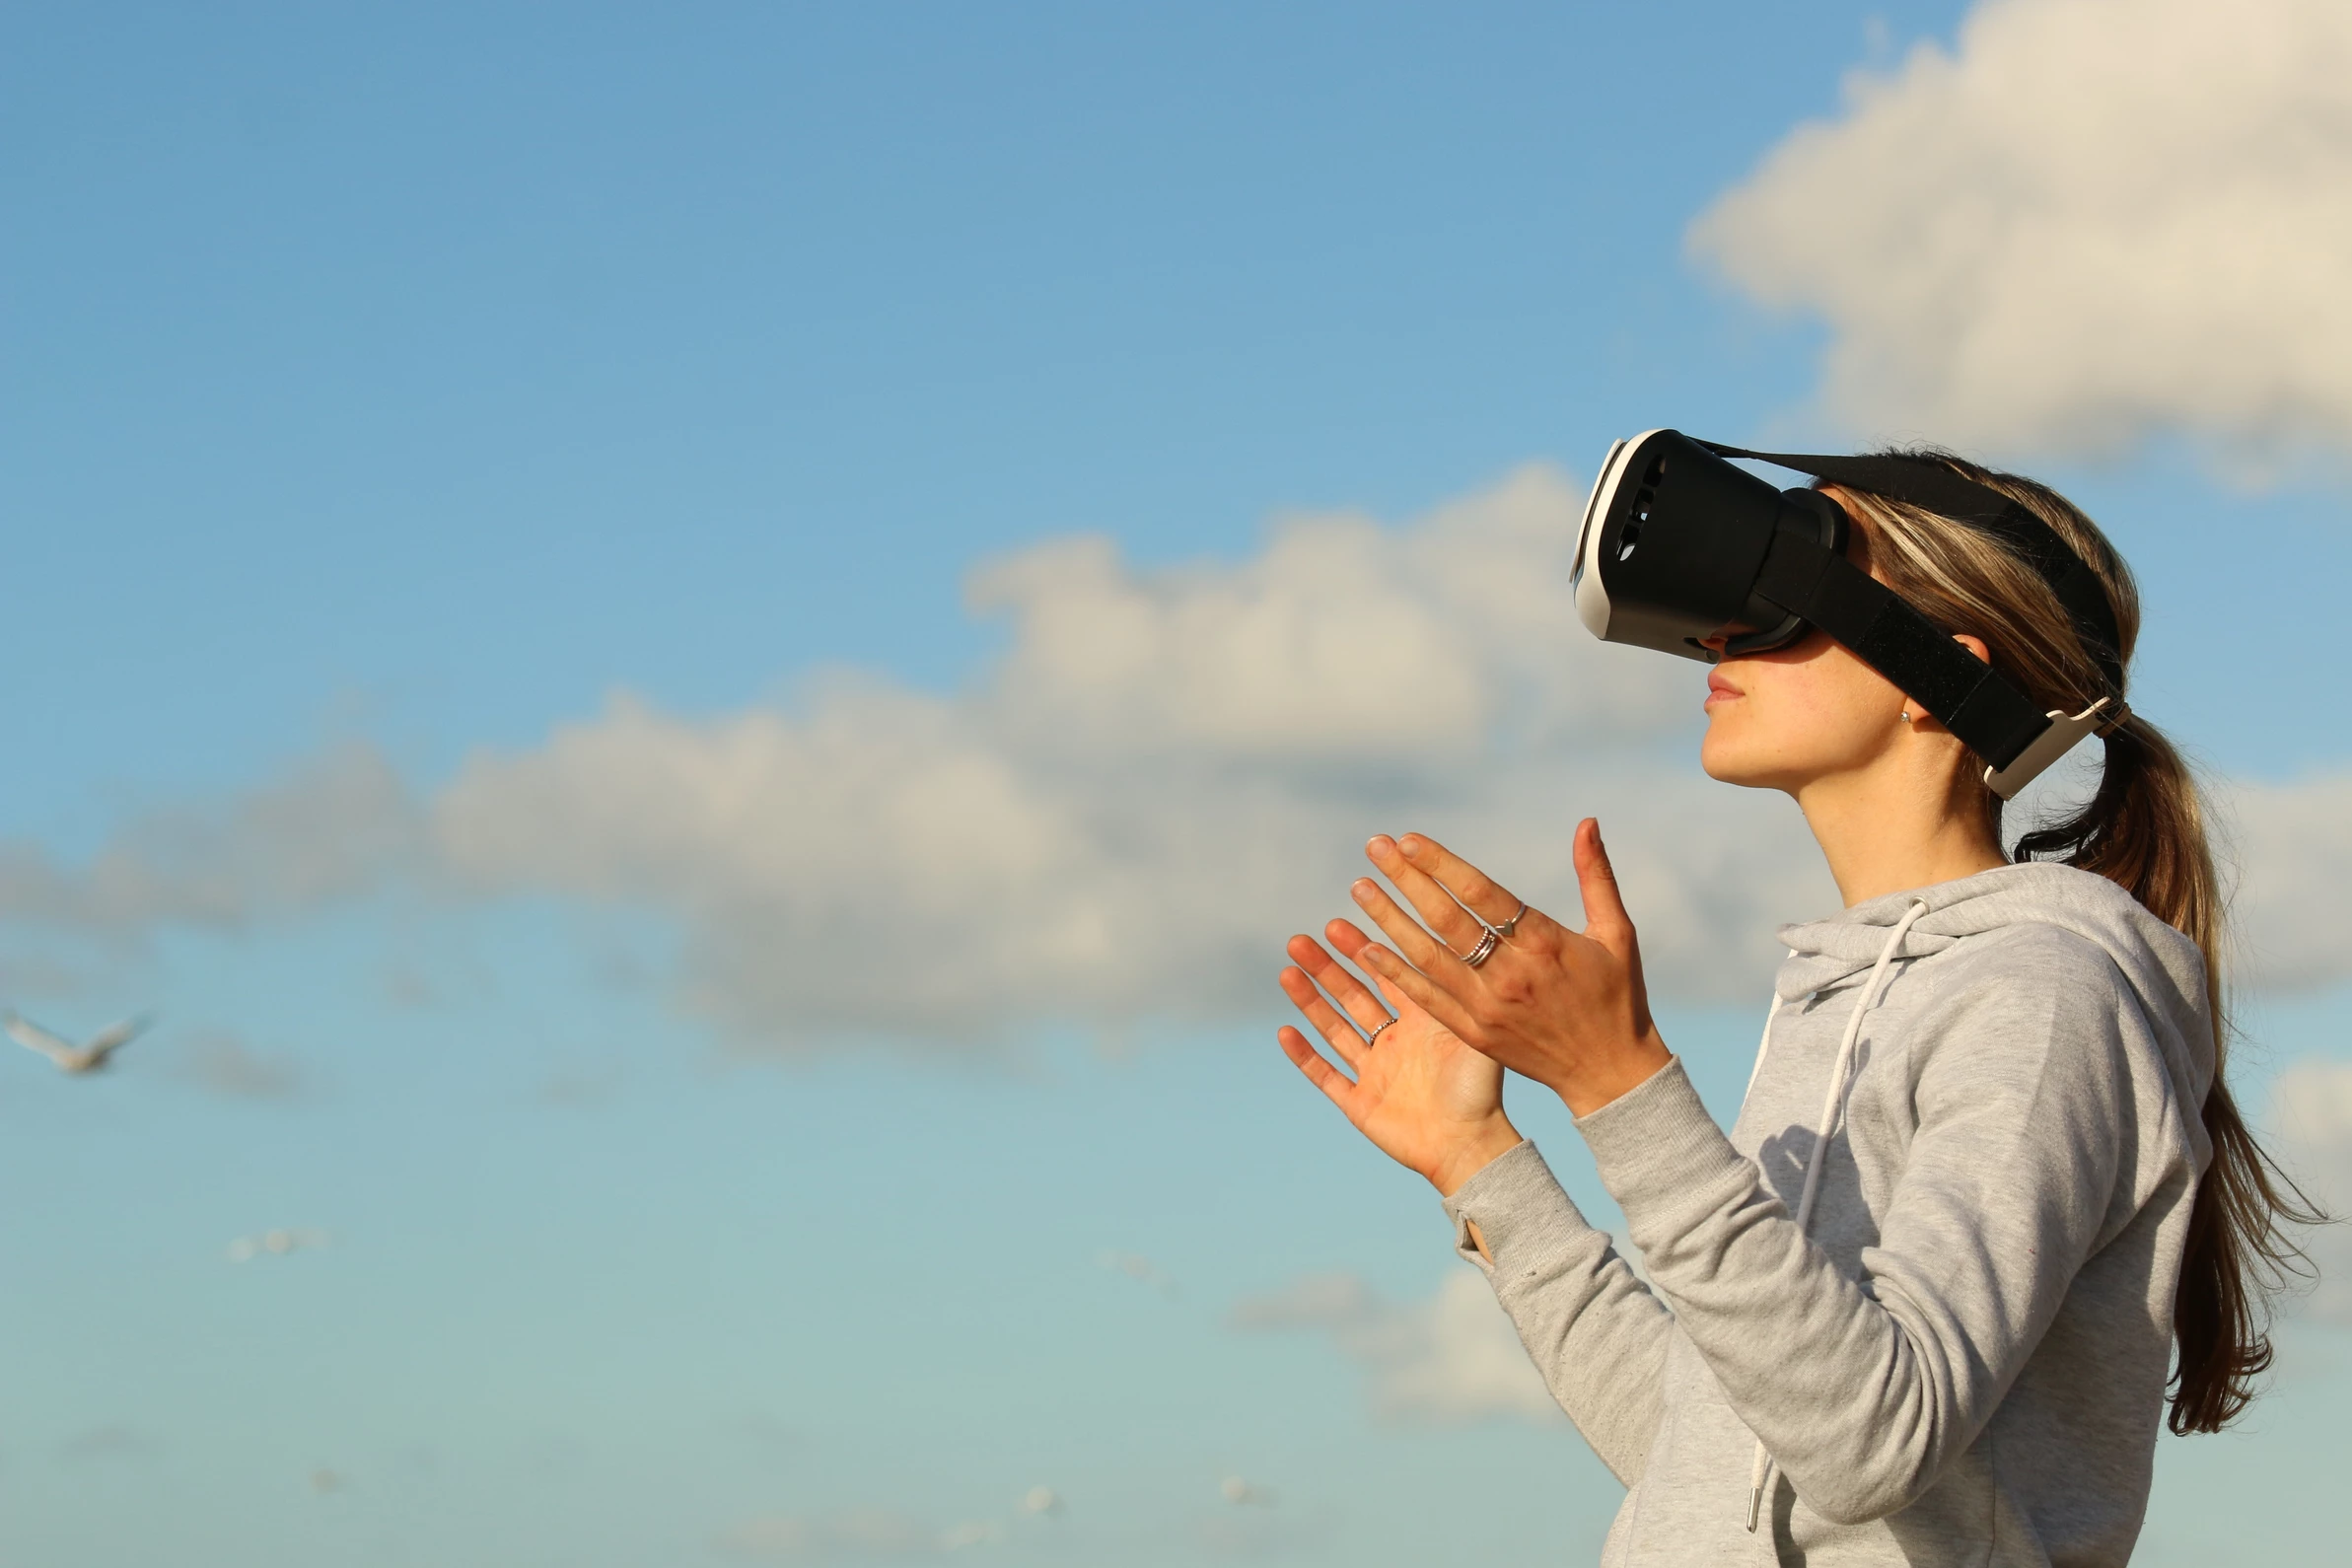 Comment la réalité virtuelle peut-elle aider les soins palliatifs?